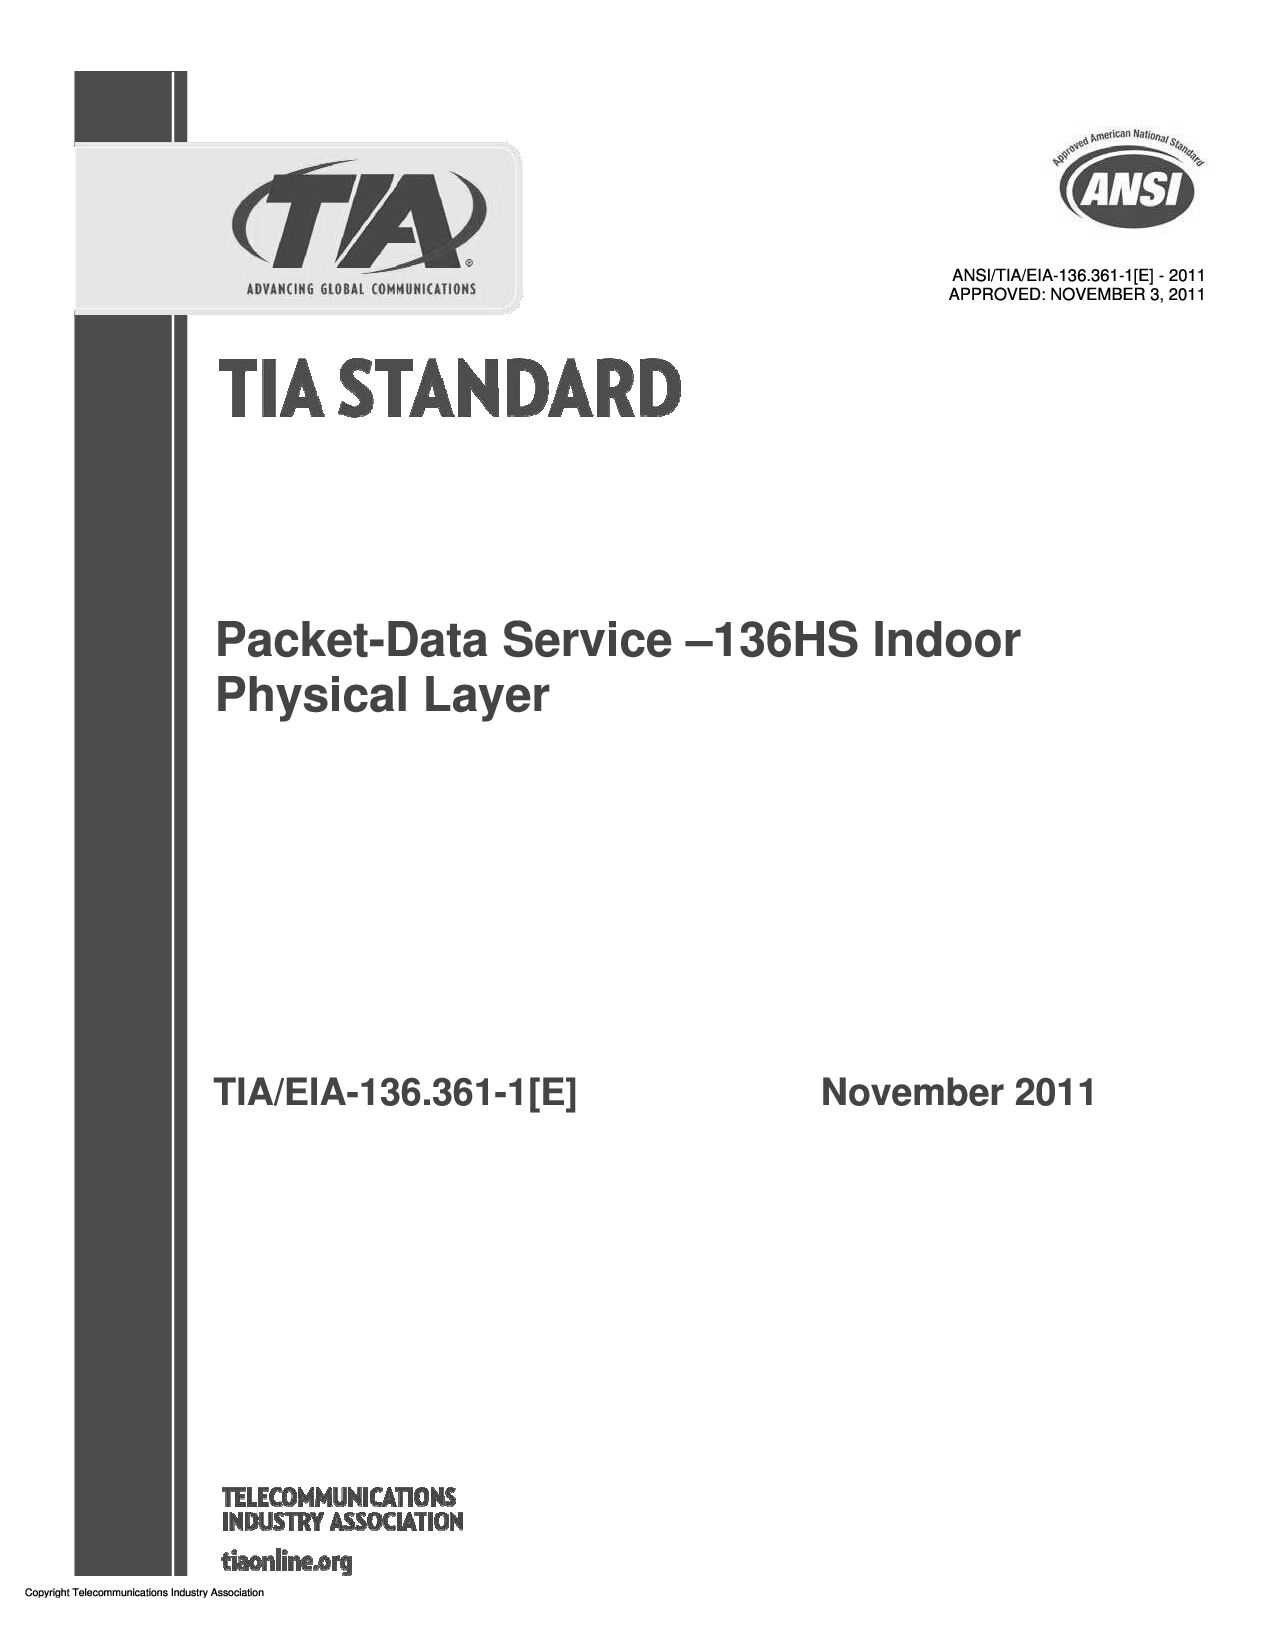 ANSI/TIA/EIA-136.361-1[E]-2011封面图